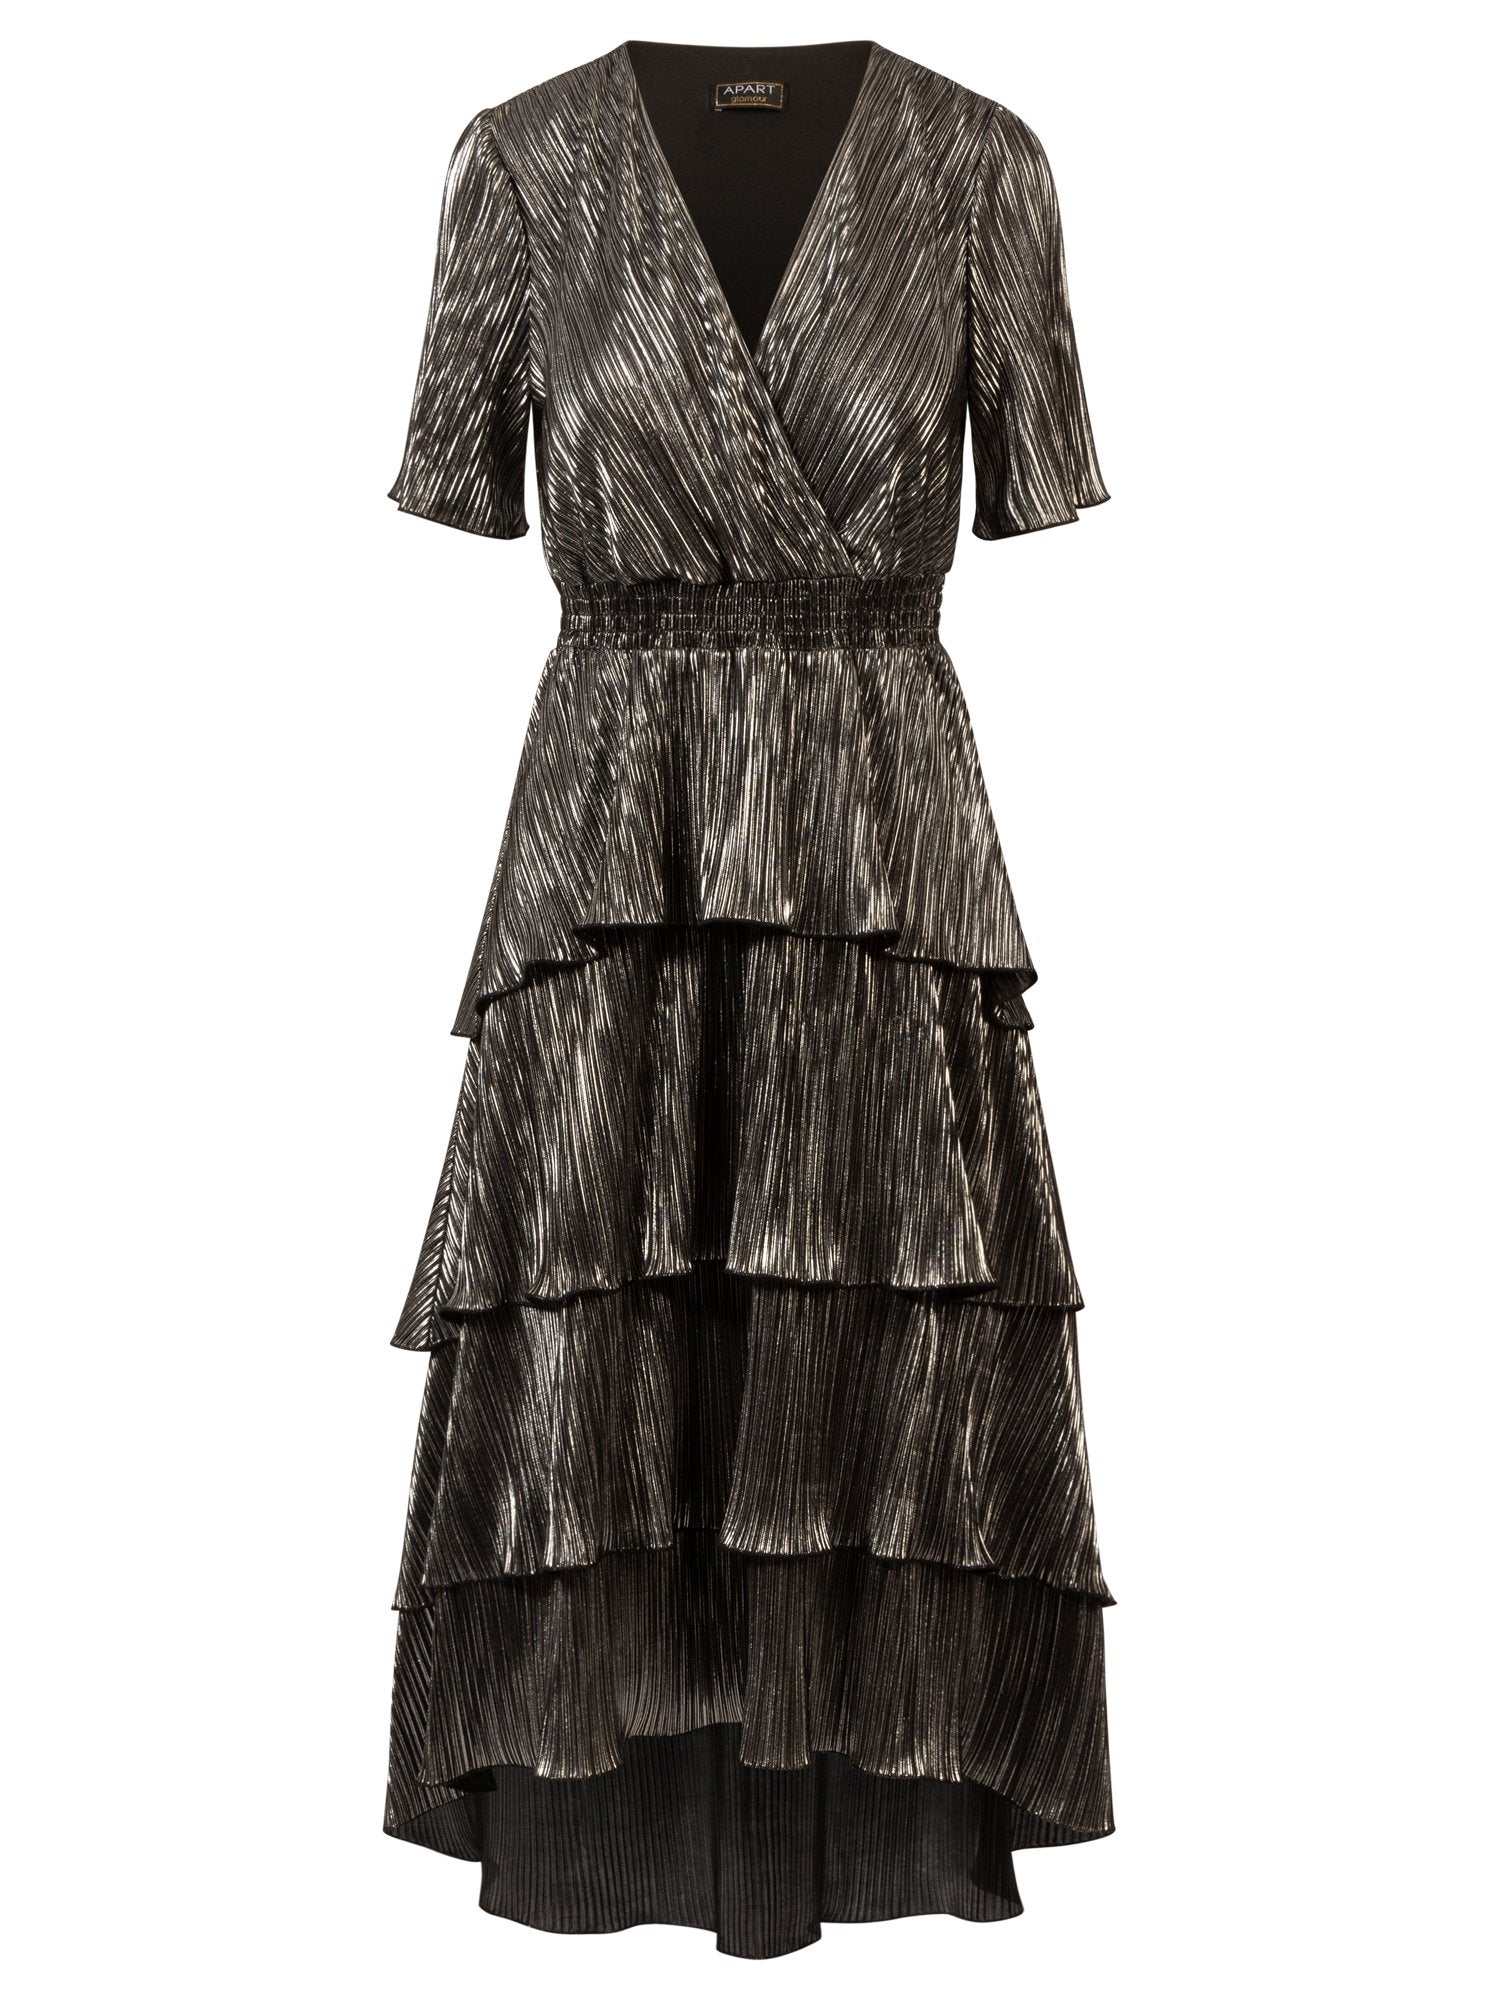 APART Abendkleid aus einer plissierten Jerseyware | silber-schwarz metallic